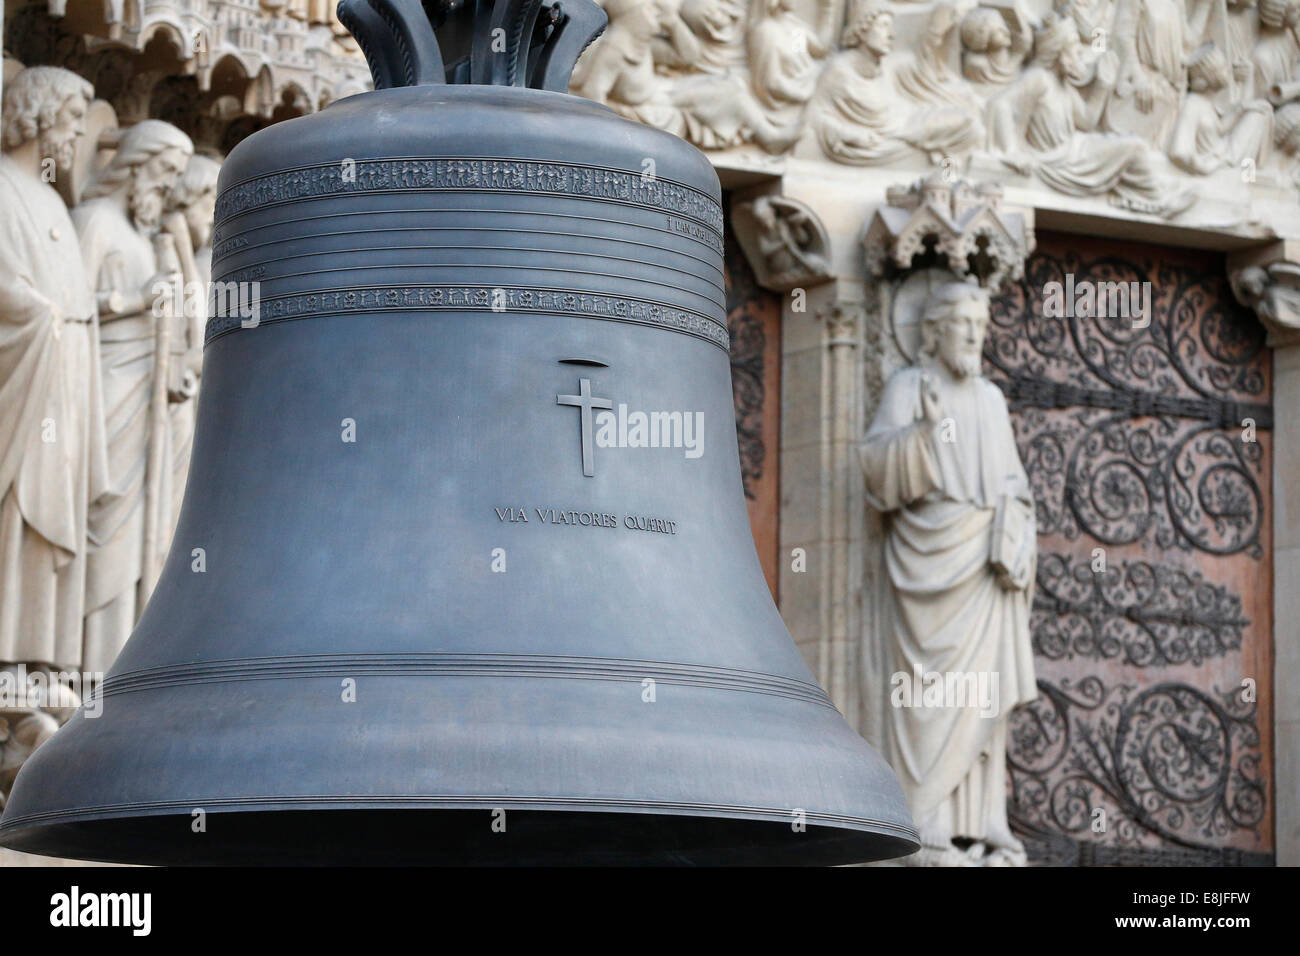 Notre-Dame de Paris 850th Jubiläum.   Ankunft der neuen Glocke läuten.  Getaufte "Marie", die größte Glocke wiegt 6 Tonnen und pla Stockfoto